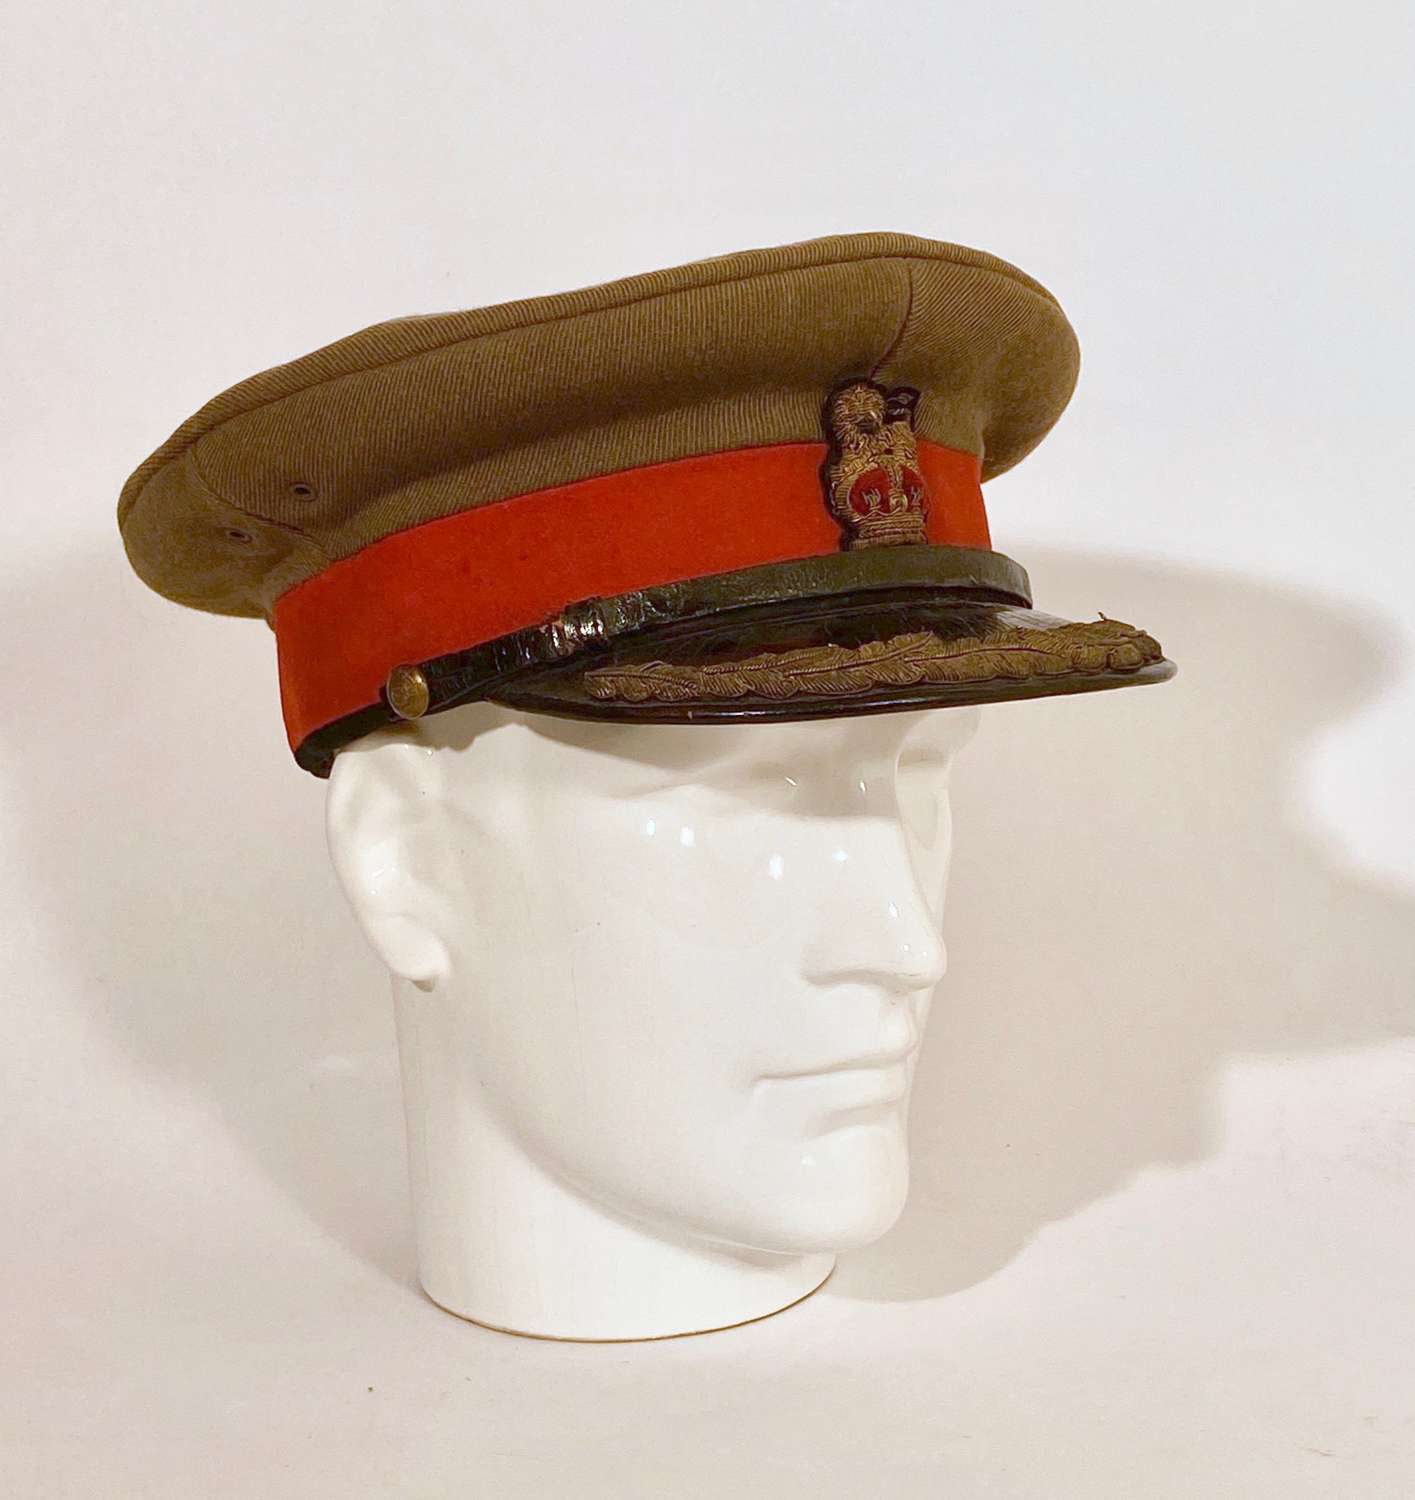 WW1 Staff Officer Service Dress Cap.